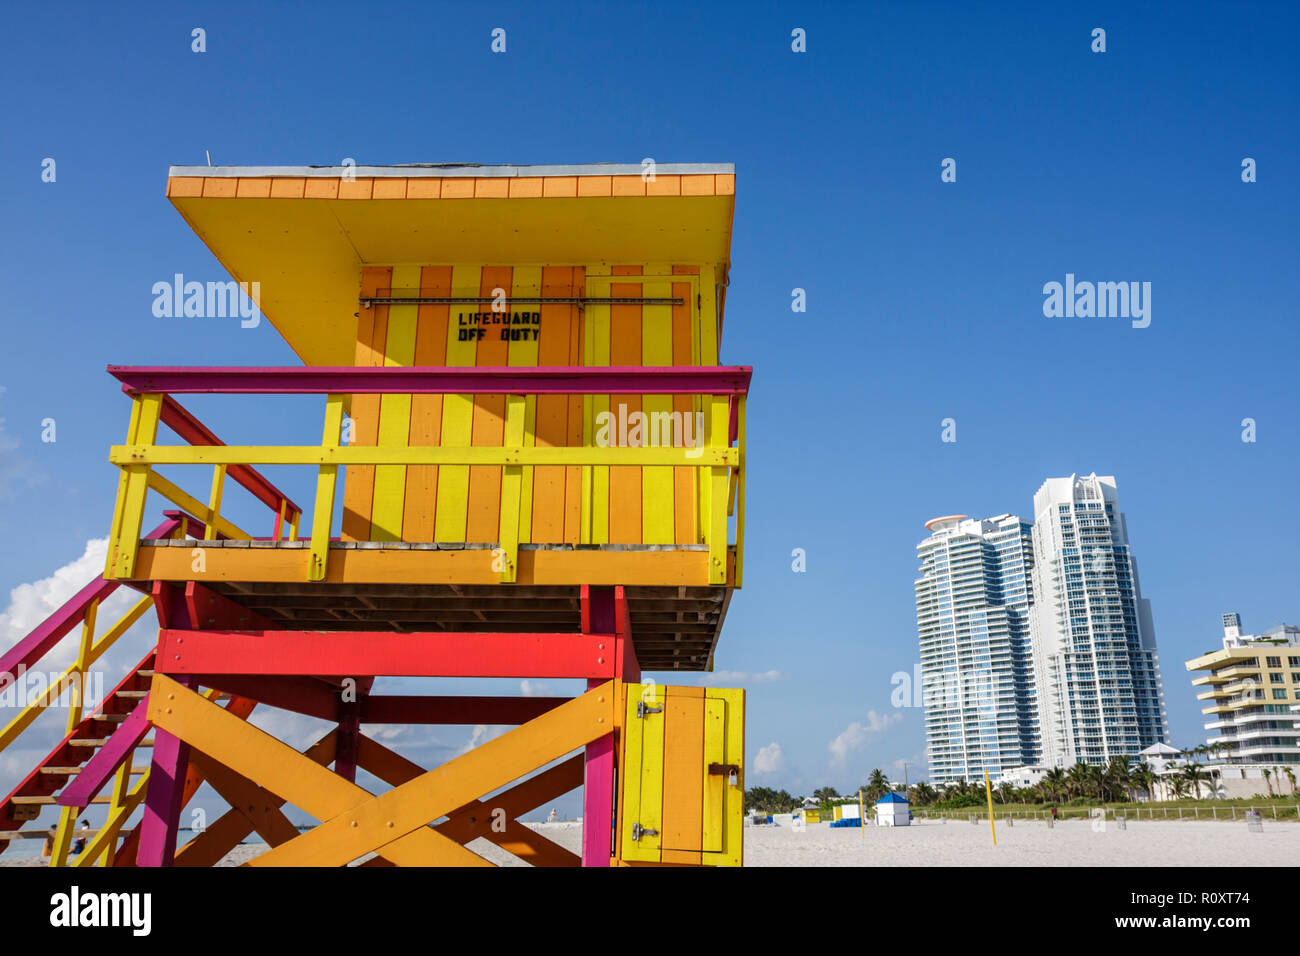 Miami Beach Florida, öffentlicher Strand, Sand, Ufer, Rettungsschwimmer, Turm, dienstfrei, Streifen, helle Farbe, orange, gelb, Schild, Gebäude, Hochhaus Wolkenkratzer Wolkenkratzer Stockfoto